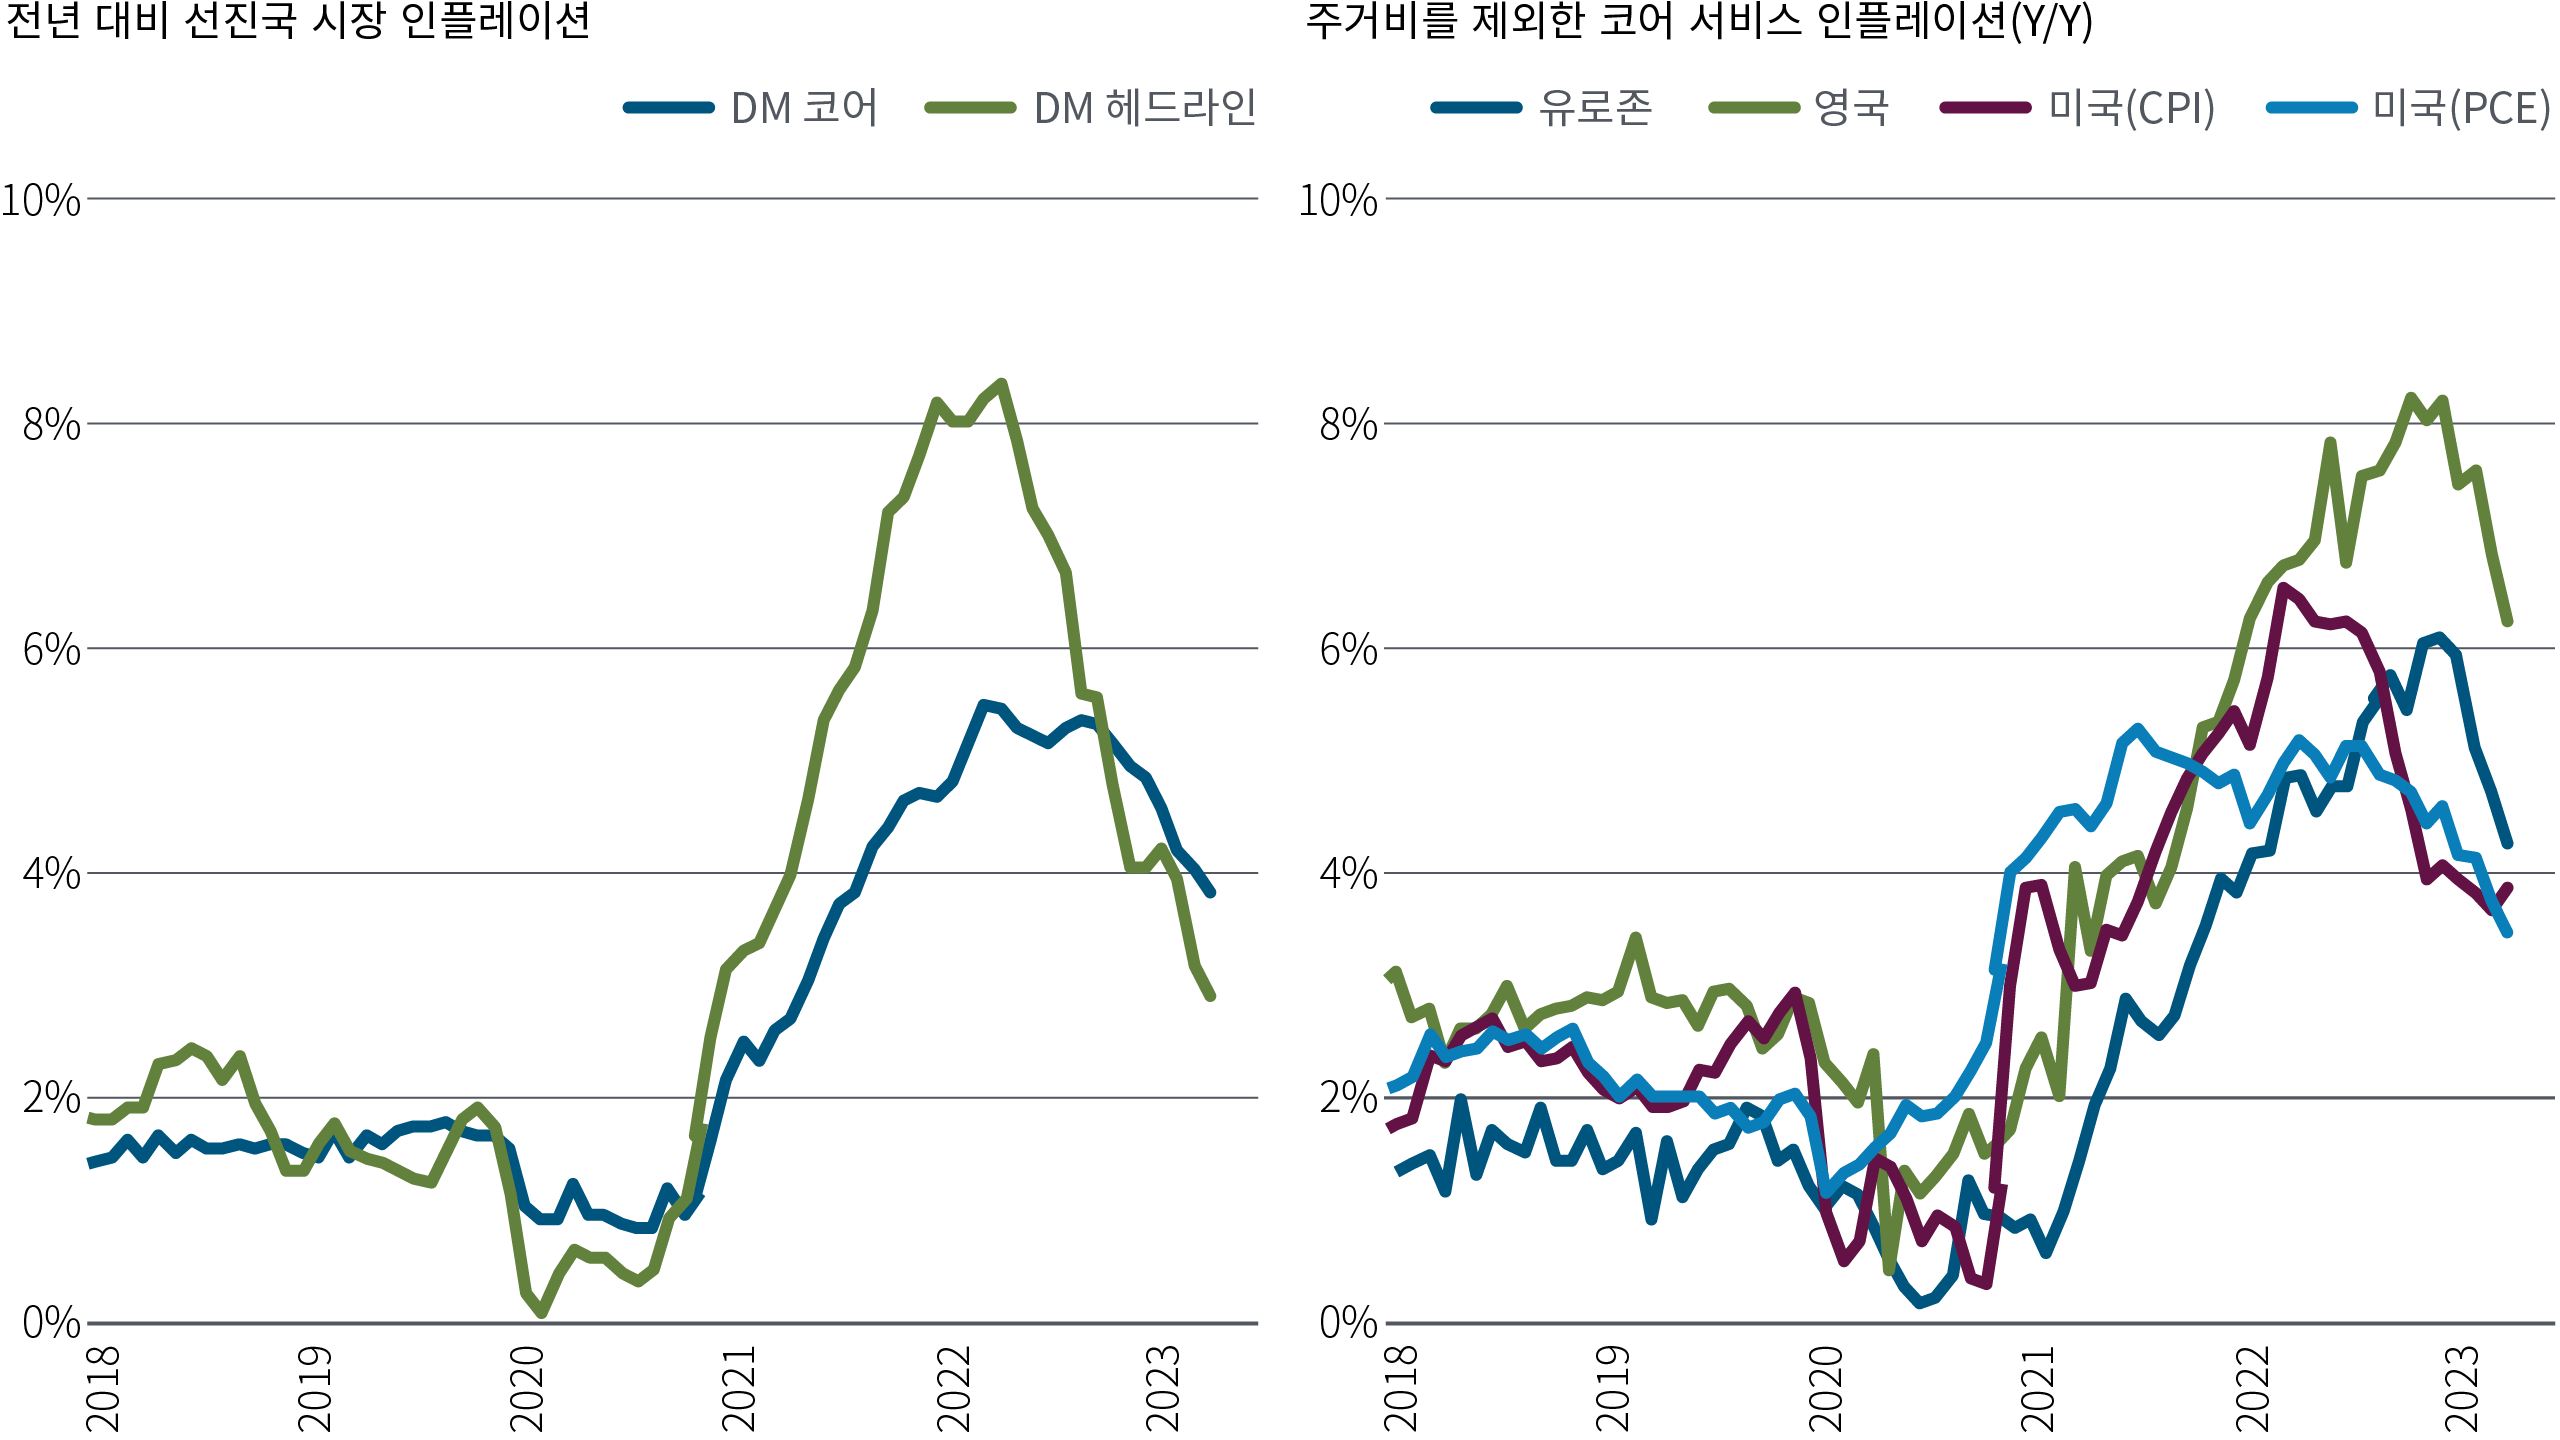 그림 1은 나란히 놓인 두 개의 선형 차트로 구성되어 있습니다.  왼쪽 차트는 2018년 1월부터 2023년 11월까지 선진국 시장 경제의 헤드라인 및 코어 인플레이션의 연간 변화율을 보여줍니다.  오른쪽 차트는 같은 기간 동안 미국(CPI 및 PCE 모두), 유로존 및 영국의 주택 인플레이션을 제외한 핵심 서비스의 연간 변화율을 보여줍니다.  헤드라인 인플레이션은 팬데믹 속에서 2020년 초 0%에 가까운 최저치를 기록했고, 핵심 지표는 2020년 내내 약 1.0%를 맴돌았습니다.  그 후 두 가지 모두 급격히 상승하여 2022년 말 헤드라인 인플레이션이 8% 이상으로 최고조에 달했고, 그 무렵 핵심 인플레이션은 5% 이상으로 상승했습니다.  이후 두 지표 모두 하락 했으며, 헤드라인 인플레이션과 코어 인플레이션은 각각 약 3.0%와 4.0%로 하락했습니다.  주택 외 코어 서비스 인플레이션도 비슷한 경로를 따라 미국, 유로존, 영국에서 2020년 중반부터 2021년 초까지 최저 수준인 약 1% 이하로 떨어졌다가 약 5~8% 범위로 급격하게 상승했습니다.   이후 이 수치는 약 4%~6% 범위로 하락했습니다.   데이터 소스는 2023년 11월 30일 기준, Haver Analytics 및 PIMCO 계산입니다.  선진국 시장(DM)은 유로존, 영국, 미국, 캐나다, 일본의 GDP 가중 합계입니다. 